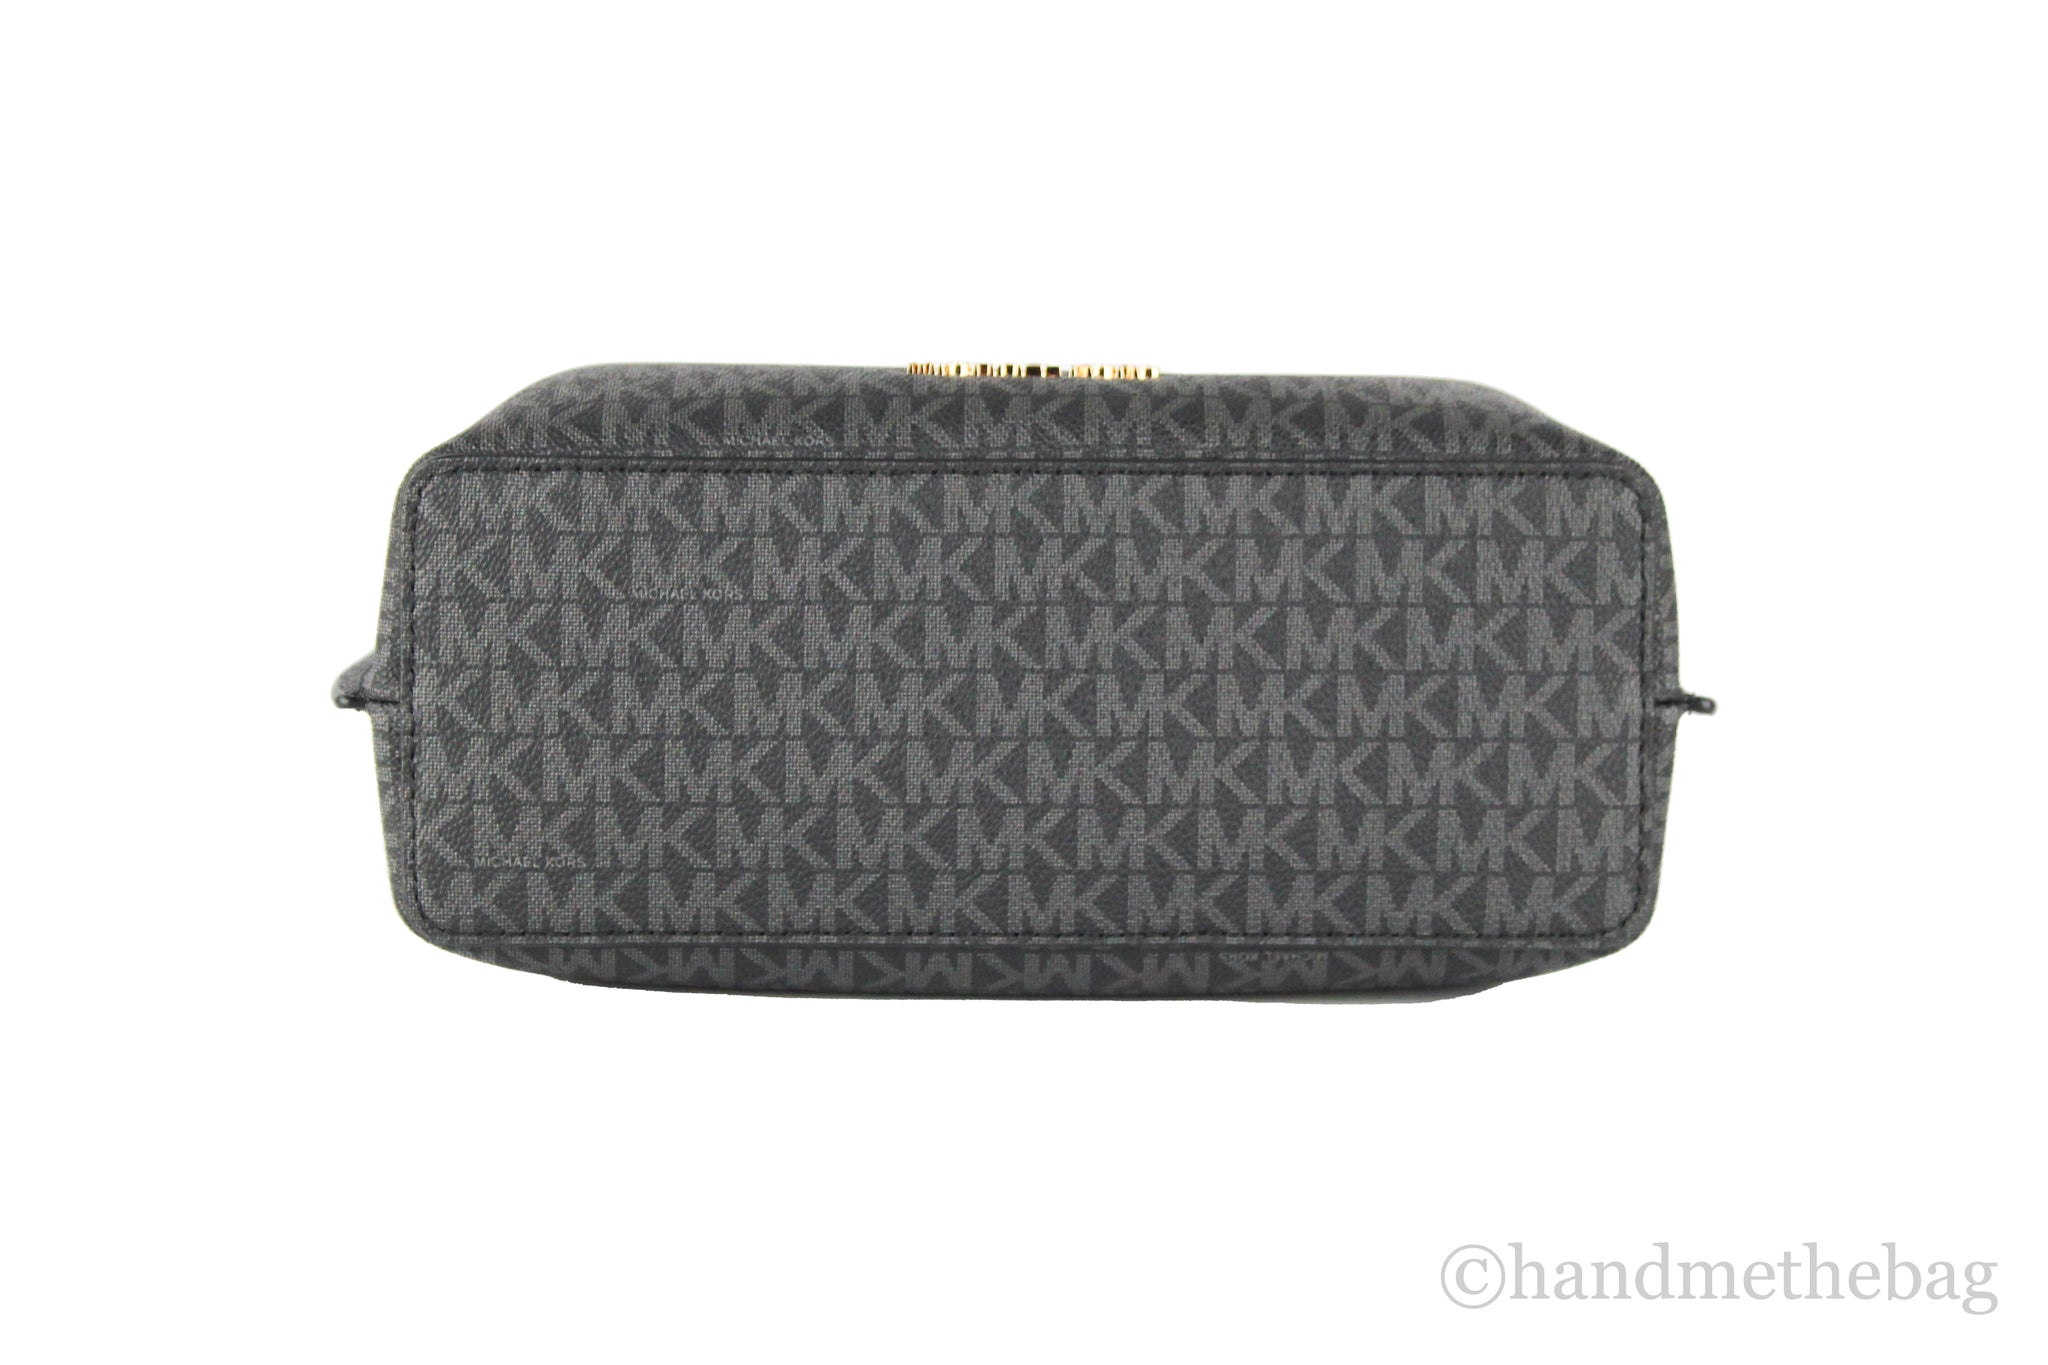 Michael Kors Emilia Small Black Signature PVC Buckle Strap Satchel Bag Handbag